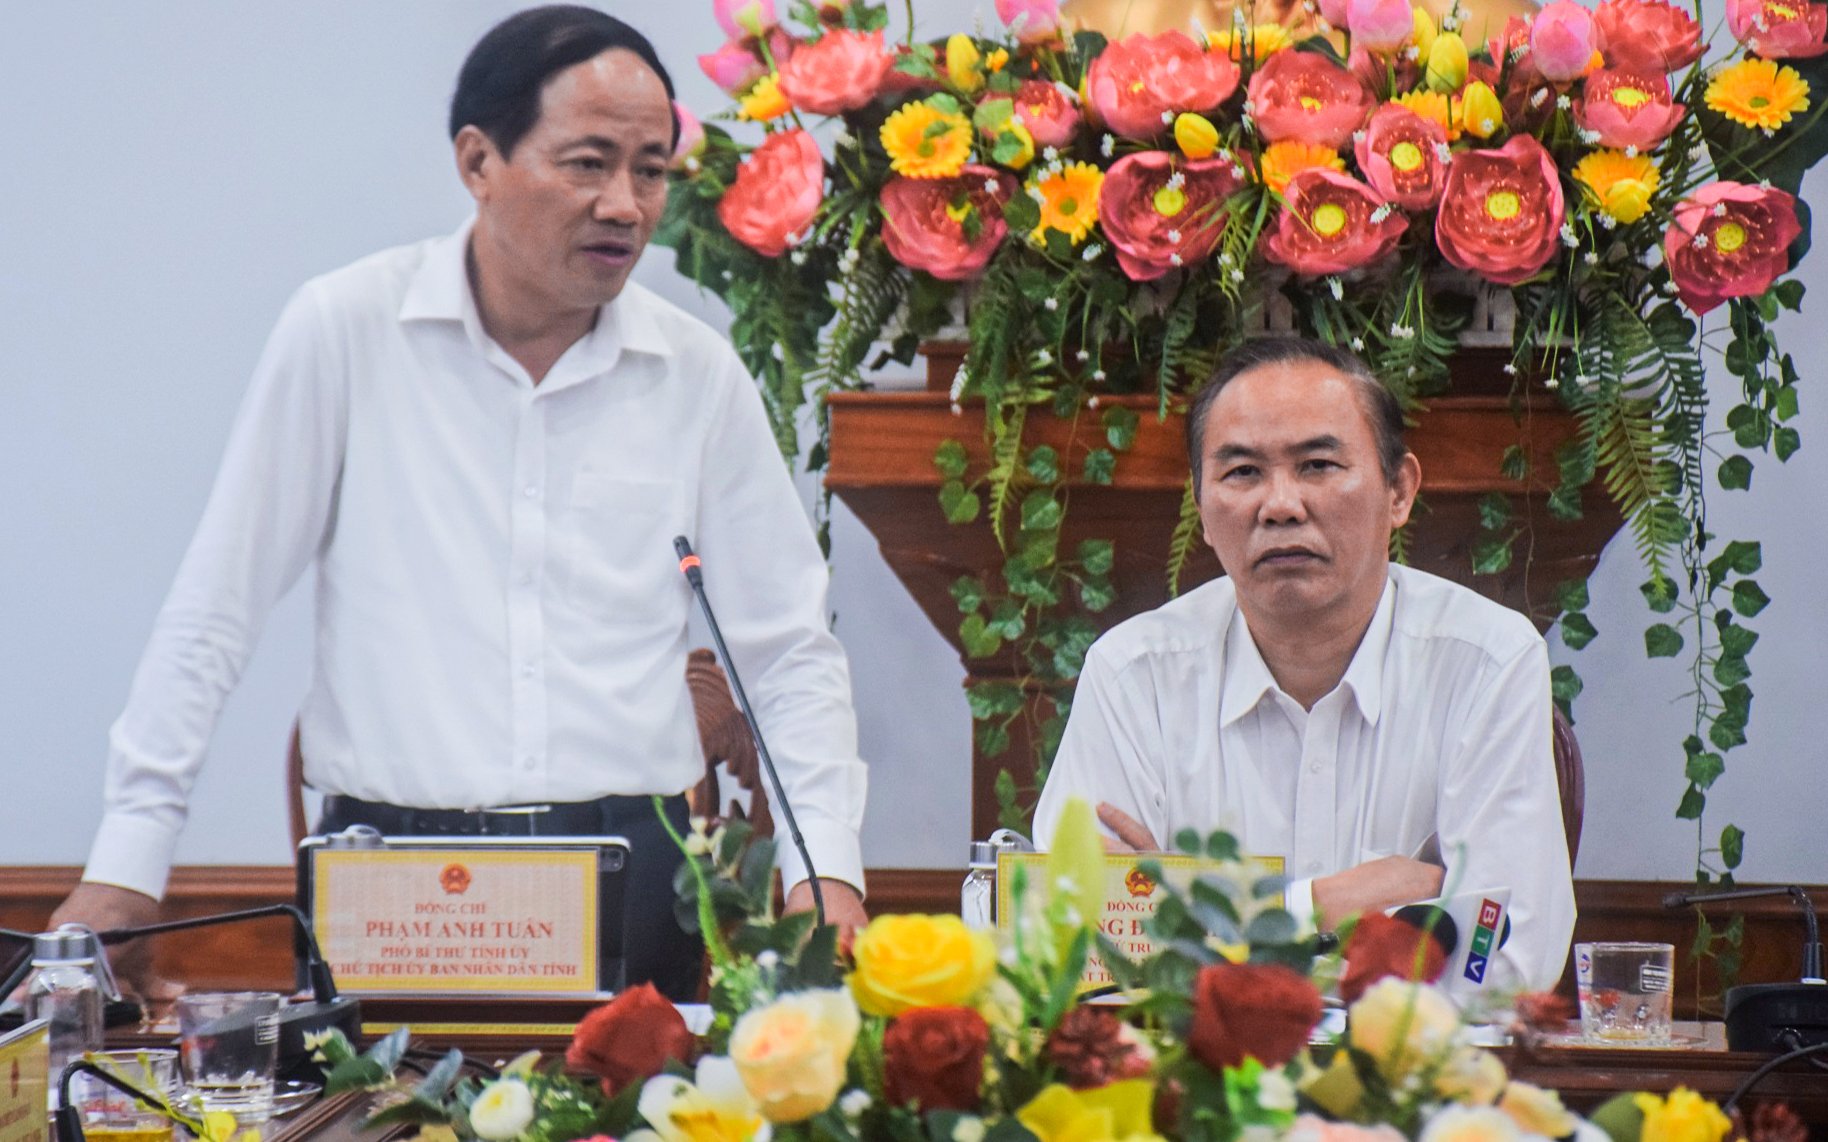 Ông Phạm Anh Tuấn (bên trái), Chủ tịch UBND tỉnh Bình Định đề nghị đoàn công tác của Bộ NN-PTNT giúp cho ngành chức năng tỉnh này khắc phục những khiếm khuyết. Ảnh: V.Đ.T.